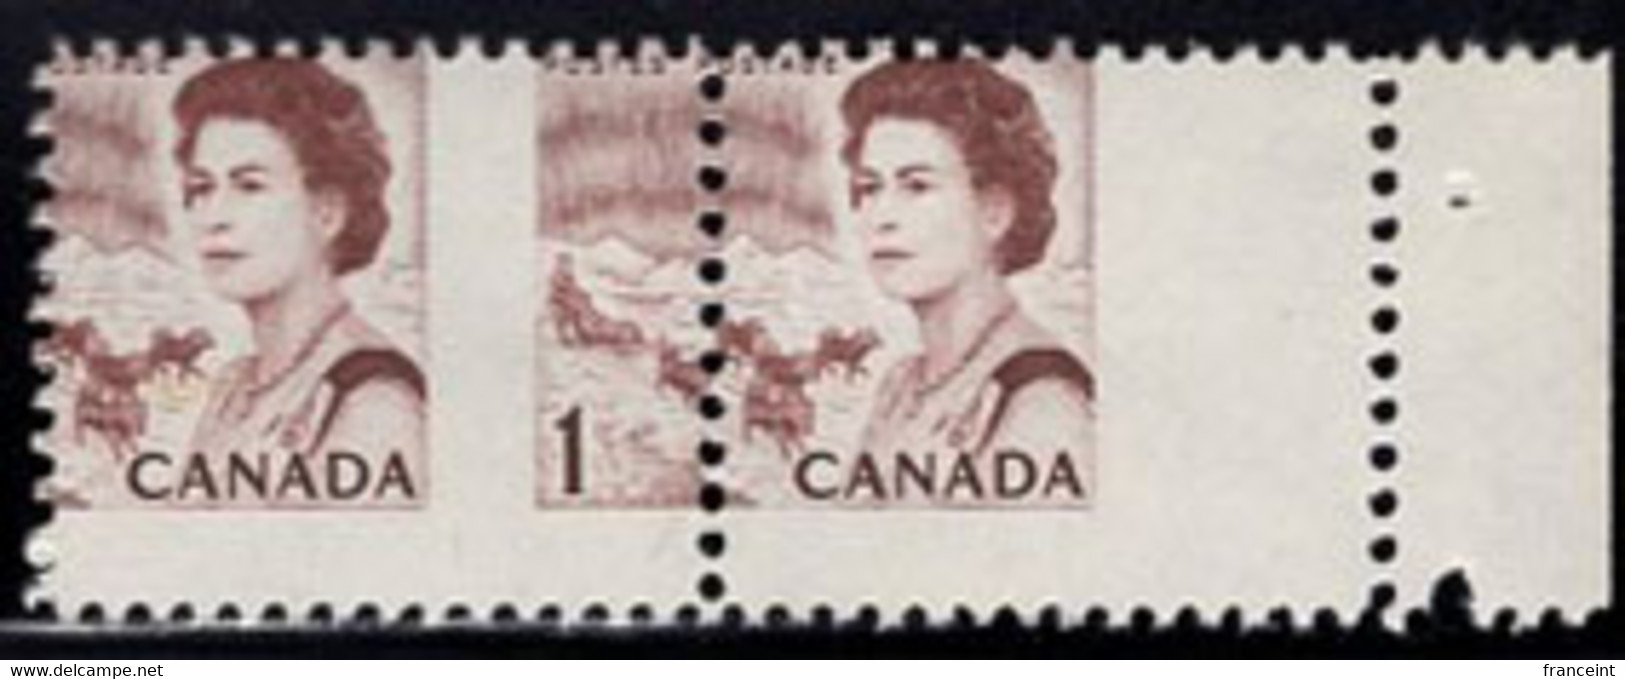 CANADA(1967) Arctic Scene. Aurora Borealis. QE II. Vertical Misperforation In Pair. Scott No 454. - Varietà & Curiosità